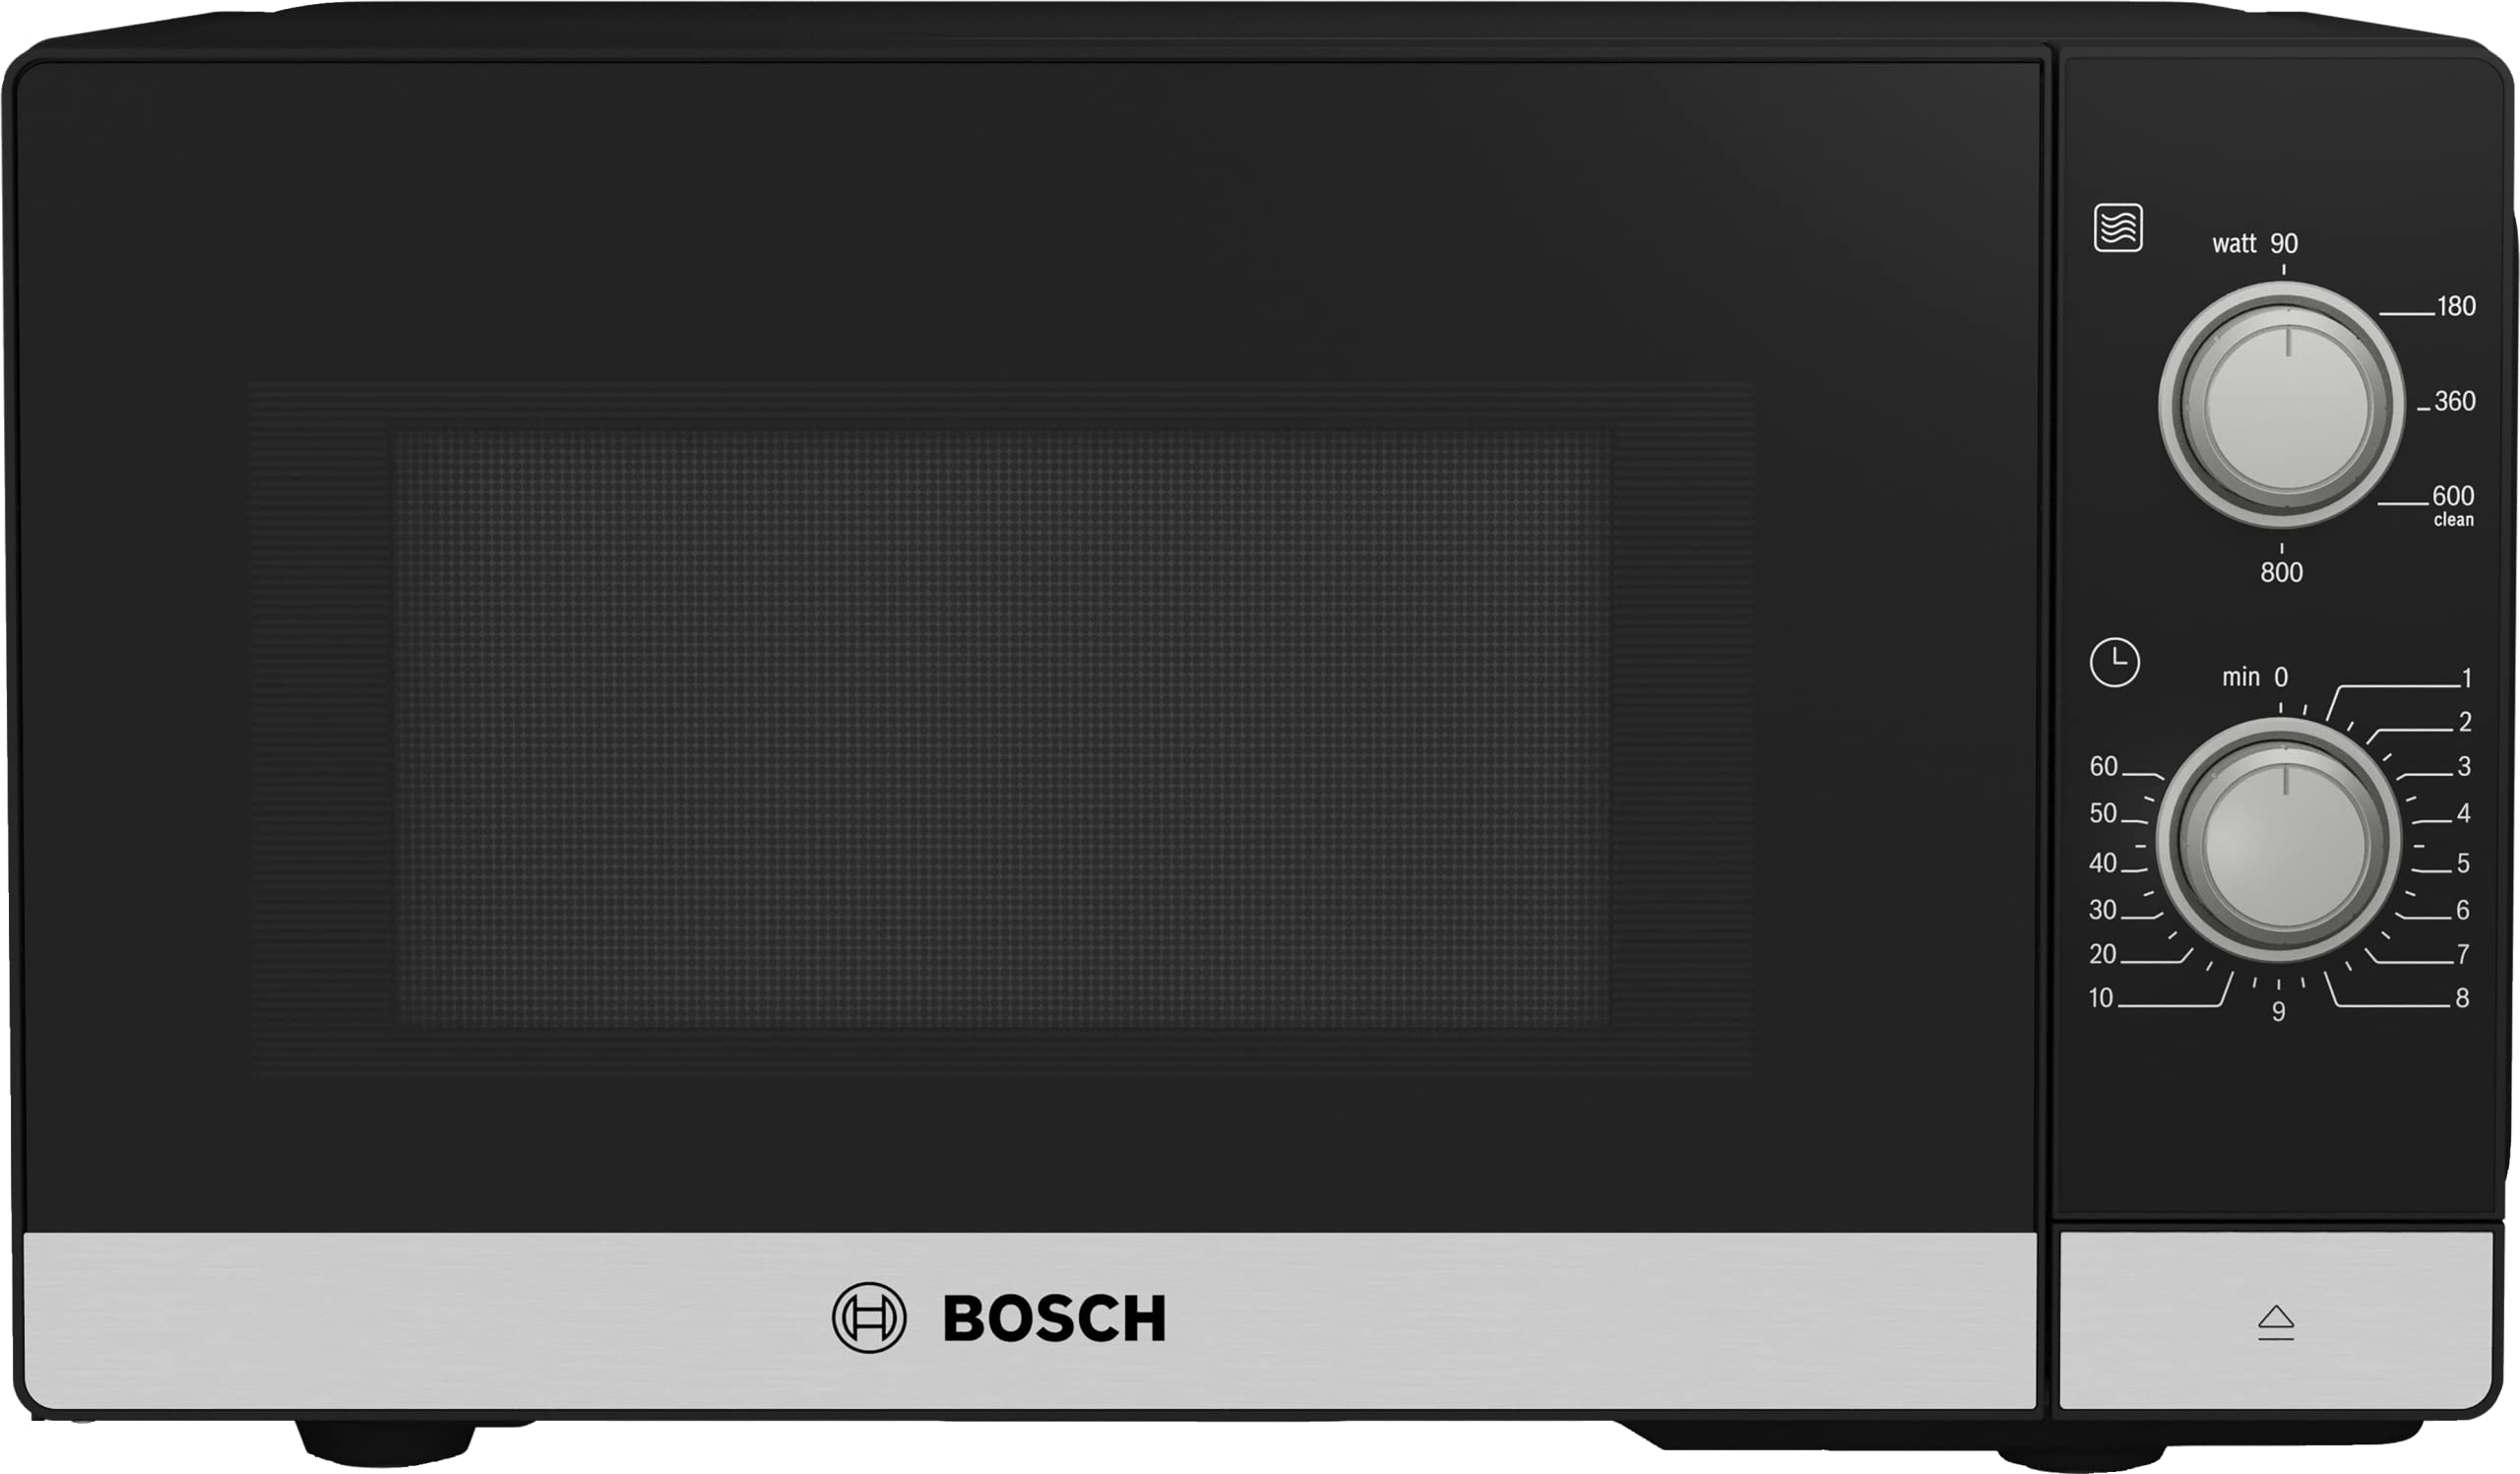 Bosch FFL020MS2 Serie 2 Mikrowelle, 26 x 44 cm, 800 W, Drehteller 27 cm, Türanschlag Links, Reinigungsunterstützung, LED-Beleuchtung gleichmäßige Ausleuchtung, Edelstahl (Neu)